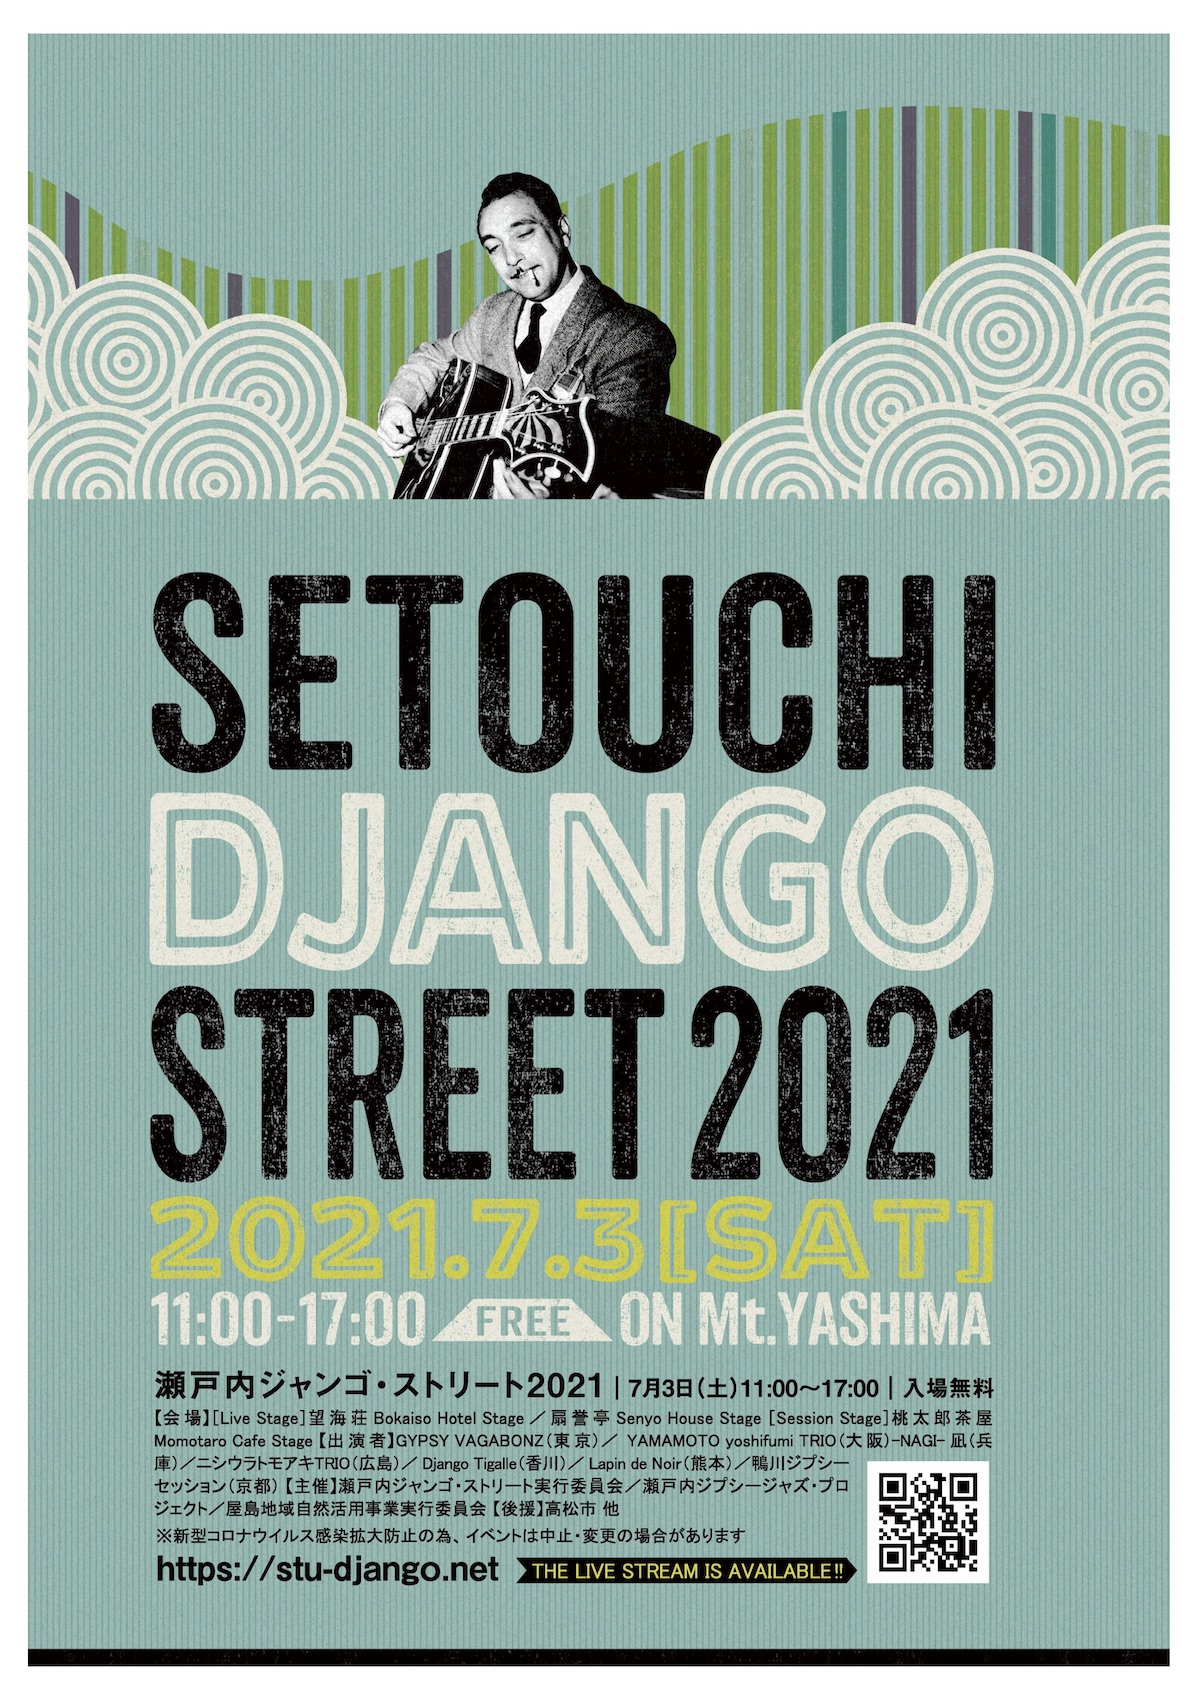 瀬戸内ジャンゴ・ストリート 2021